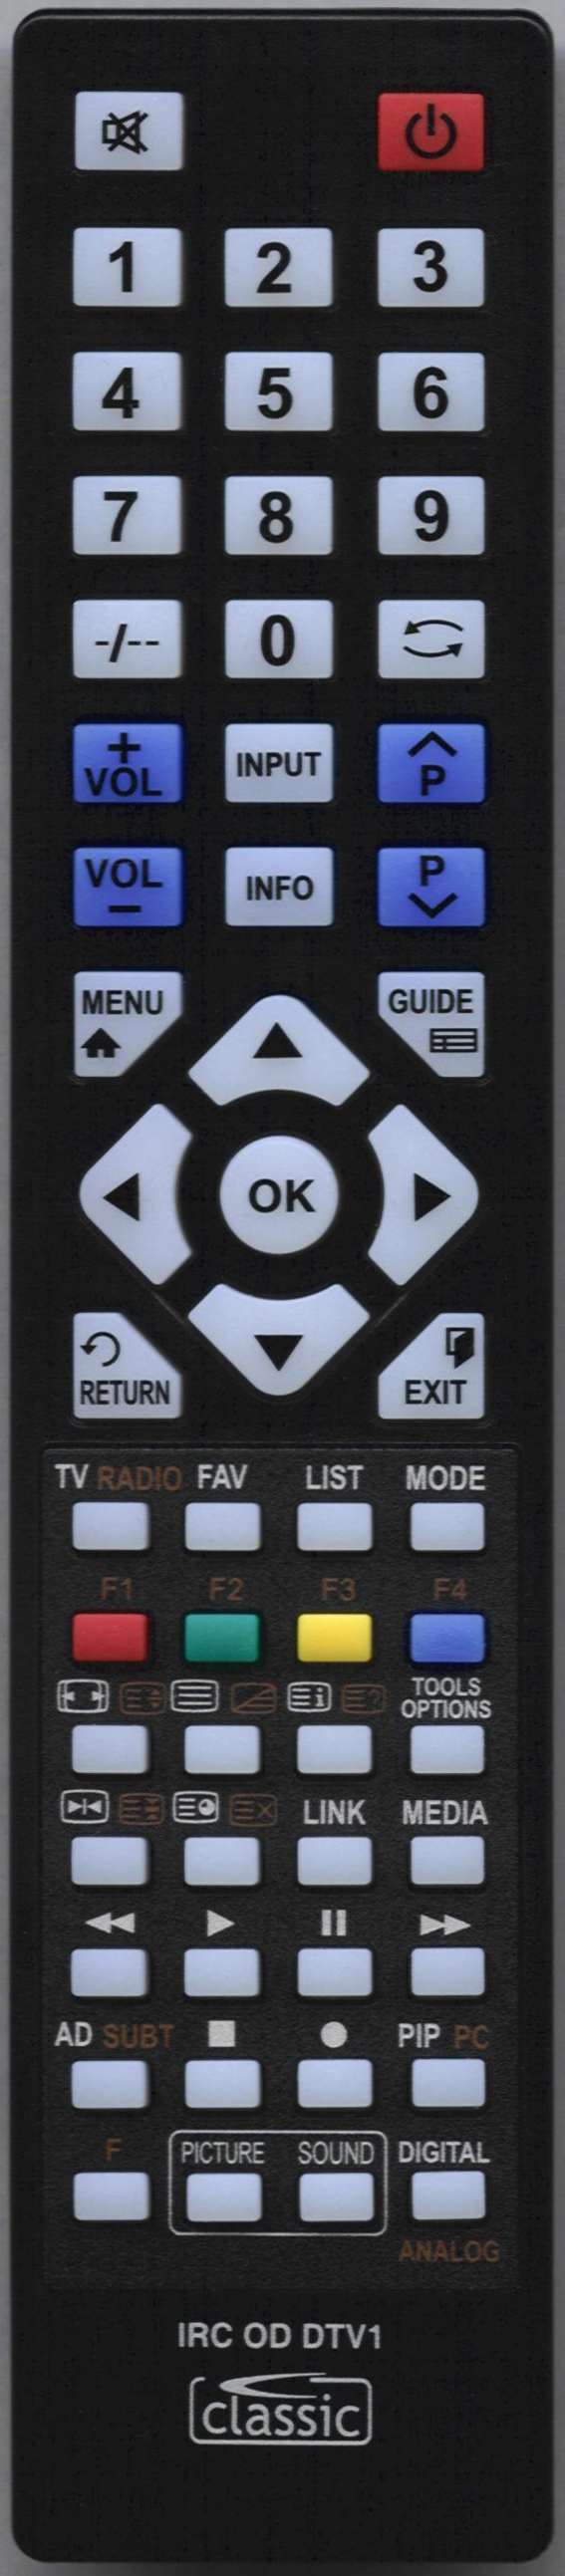 SONY KDL32W706B Remote Control Alternative